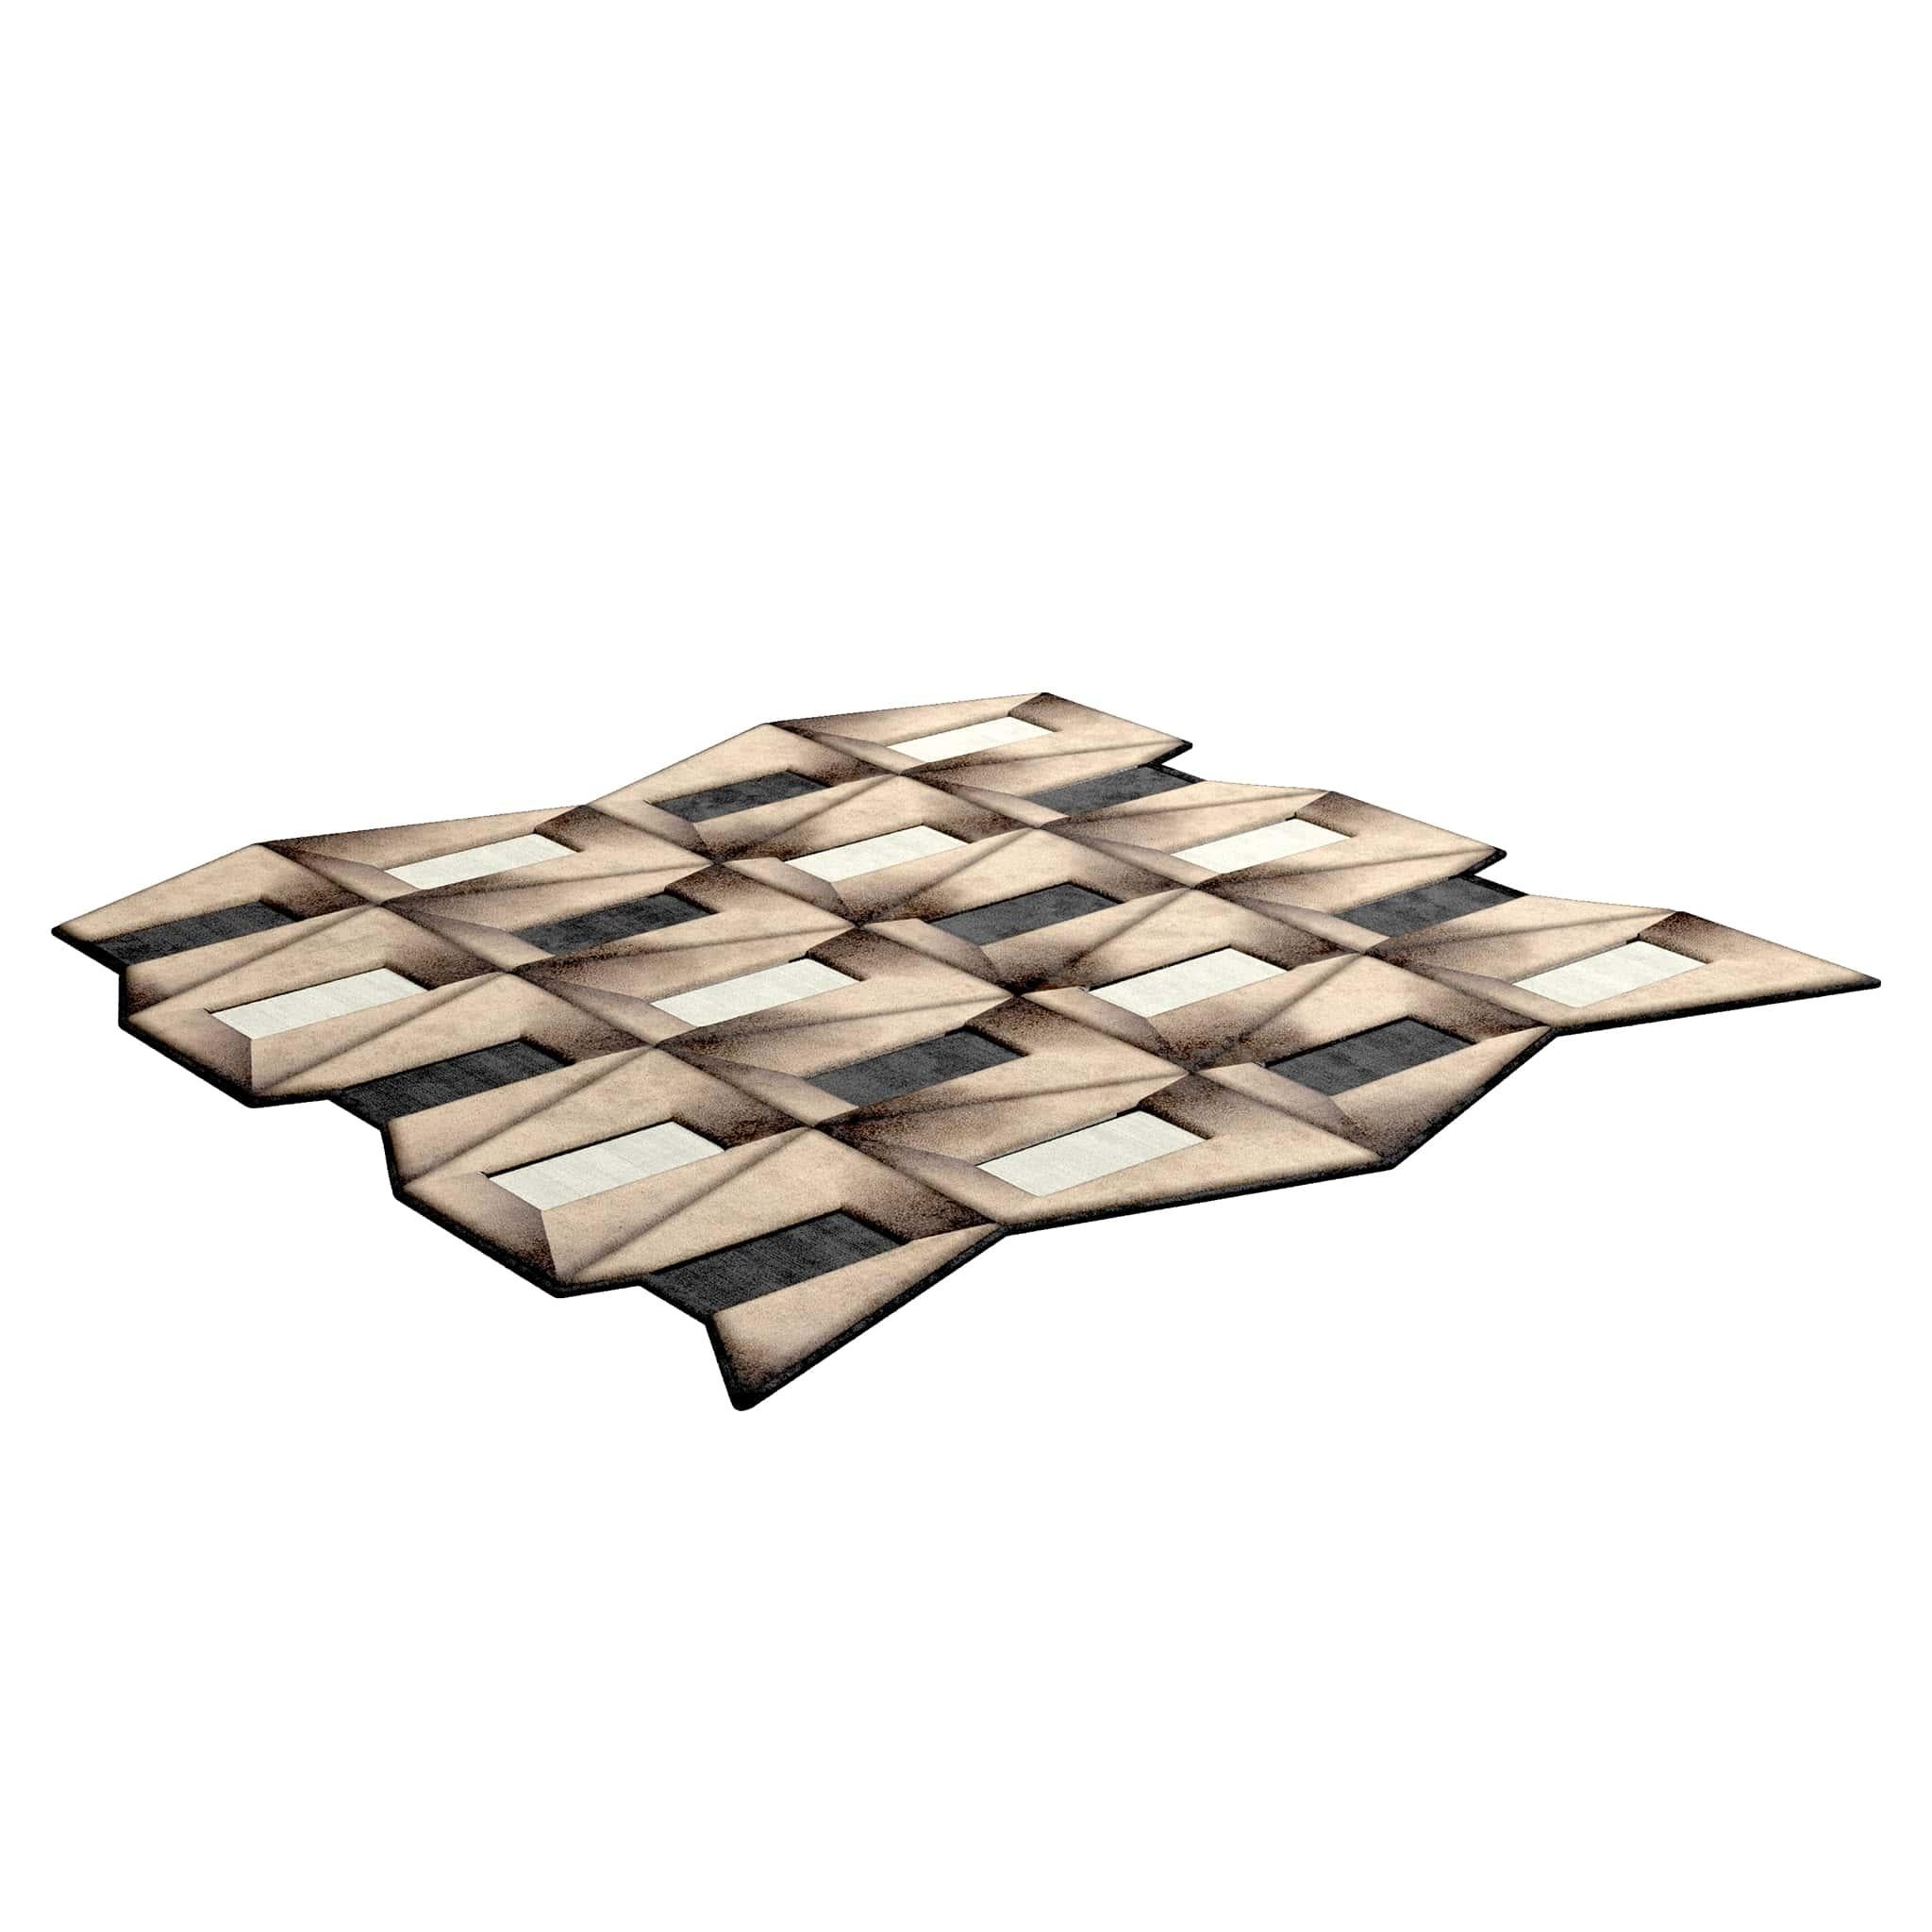 TAPIS Shaped #012 ist ein eklektischer Teppich, der das Flair der Mitte des Jahrhunderts mit dem Stil der Postmoderne verbindet. Dieser Teppich ist handgetuftet und besteht aus 100% botanischer Seide mit einer Dicke von 16 mm. Erhältlich in den